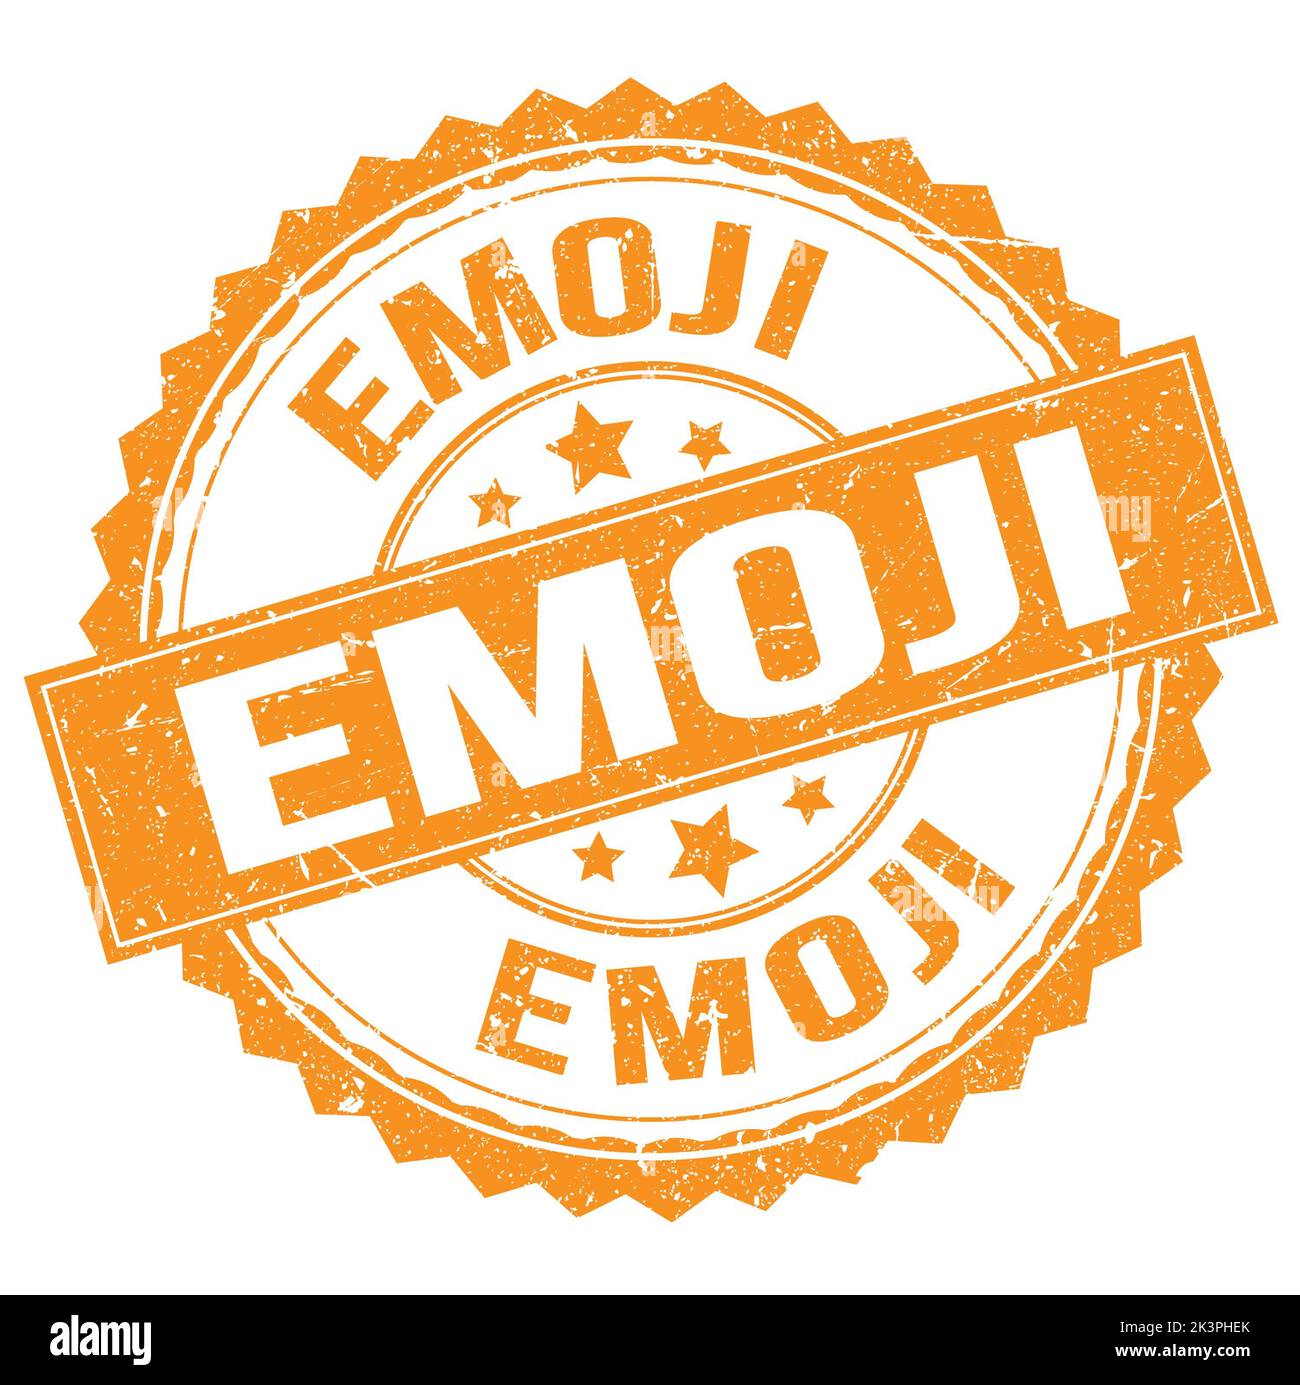 EMOJI text written on orange round stamp sign Stock Photo